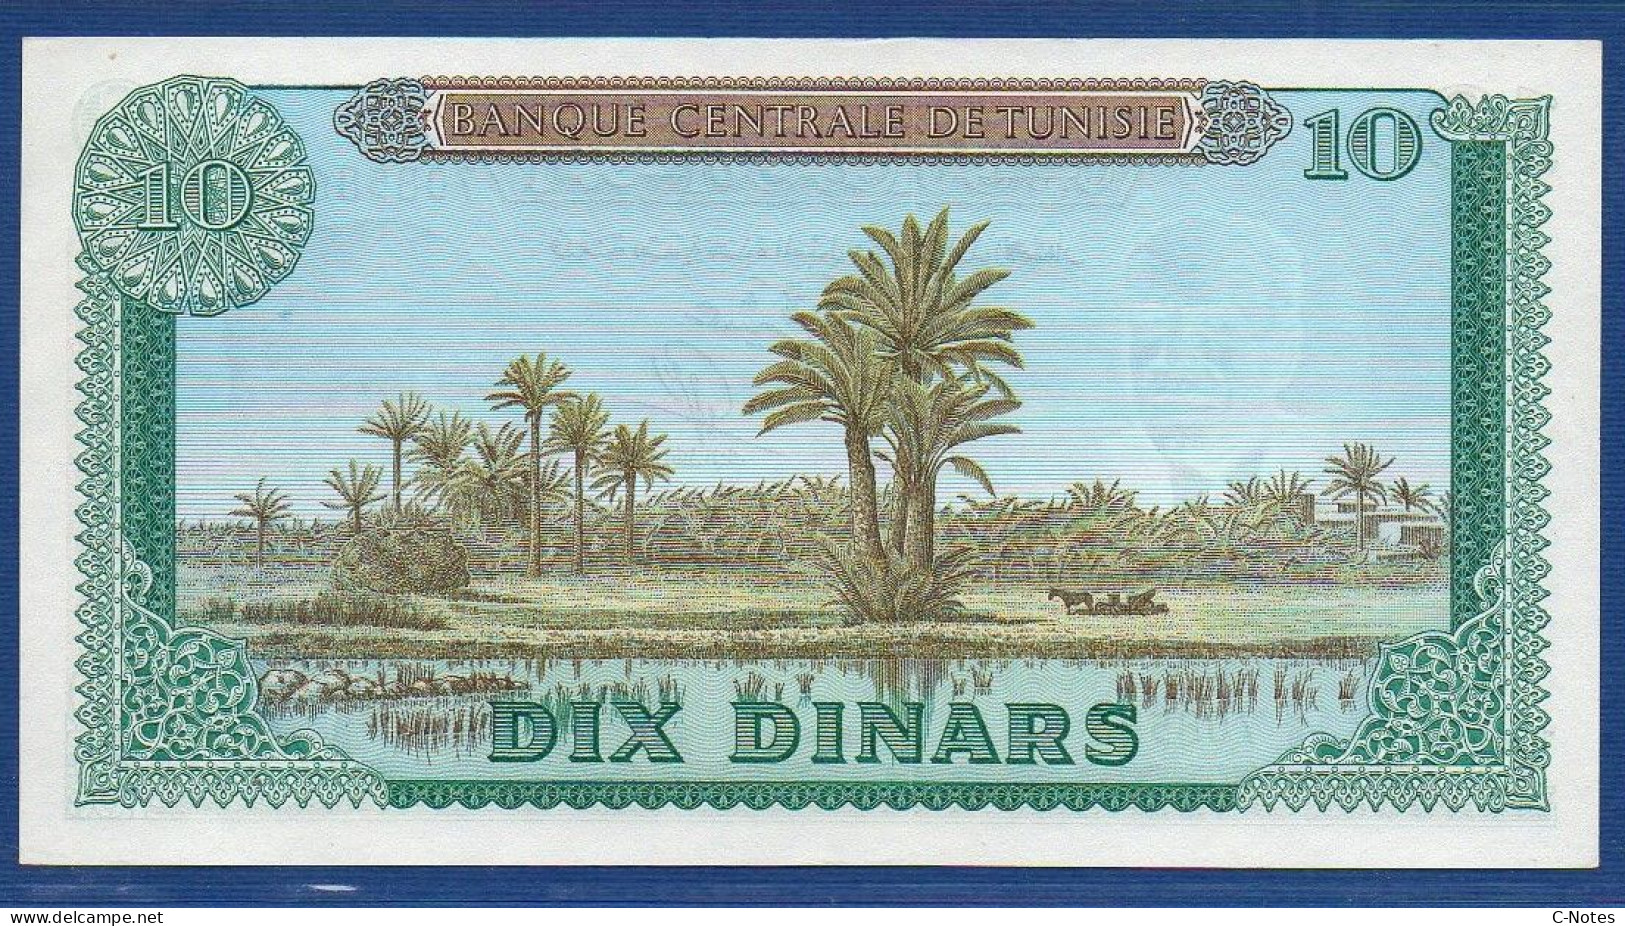 TUNISIA - P.65 – 10 Dinars 1969 UNC, S/n D/8 708586 - Tunisie